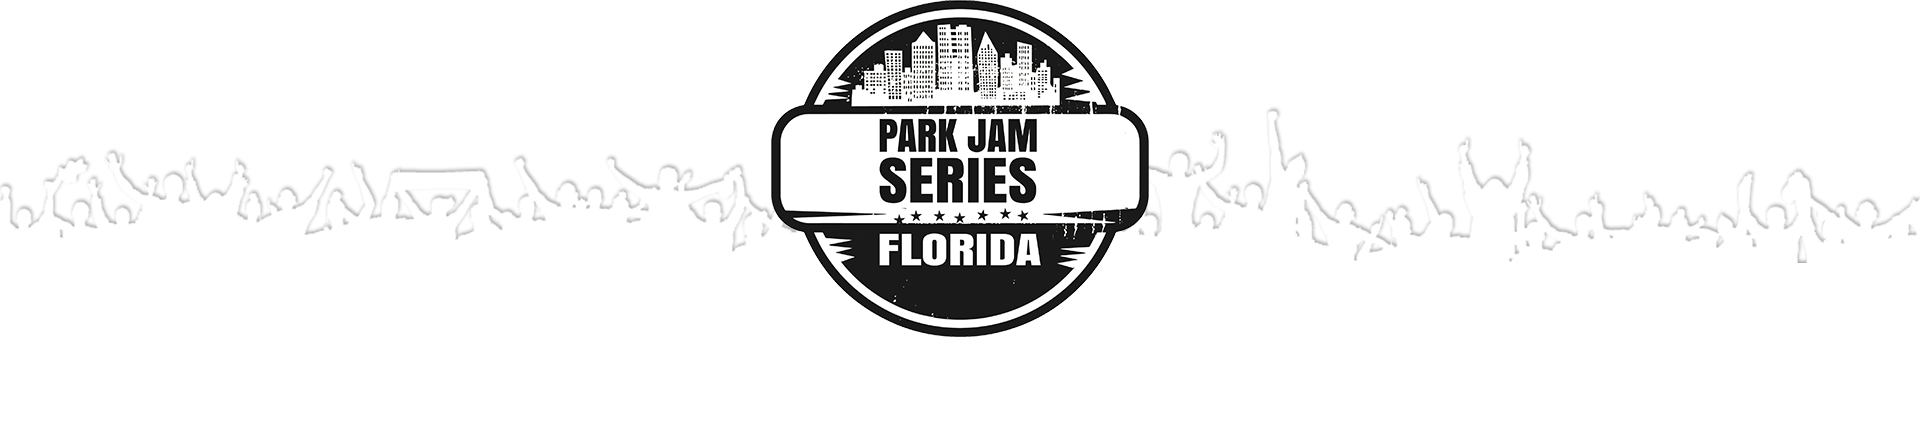 Outdoor Event and Park Festival | Park Jam Series, Florida